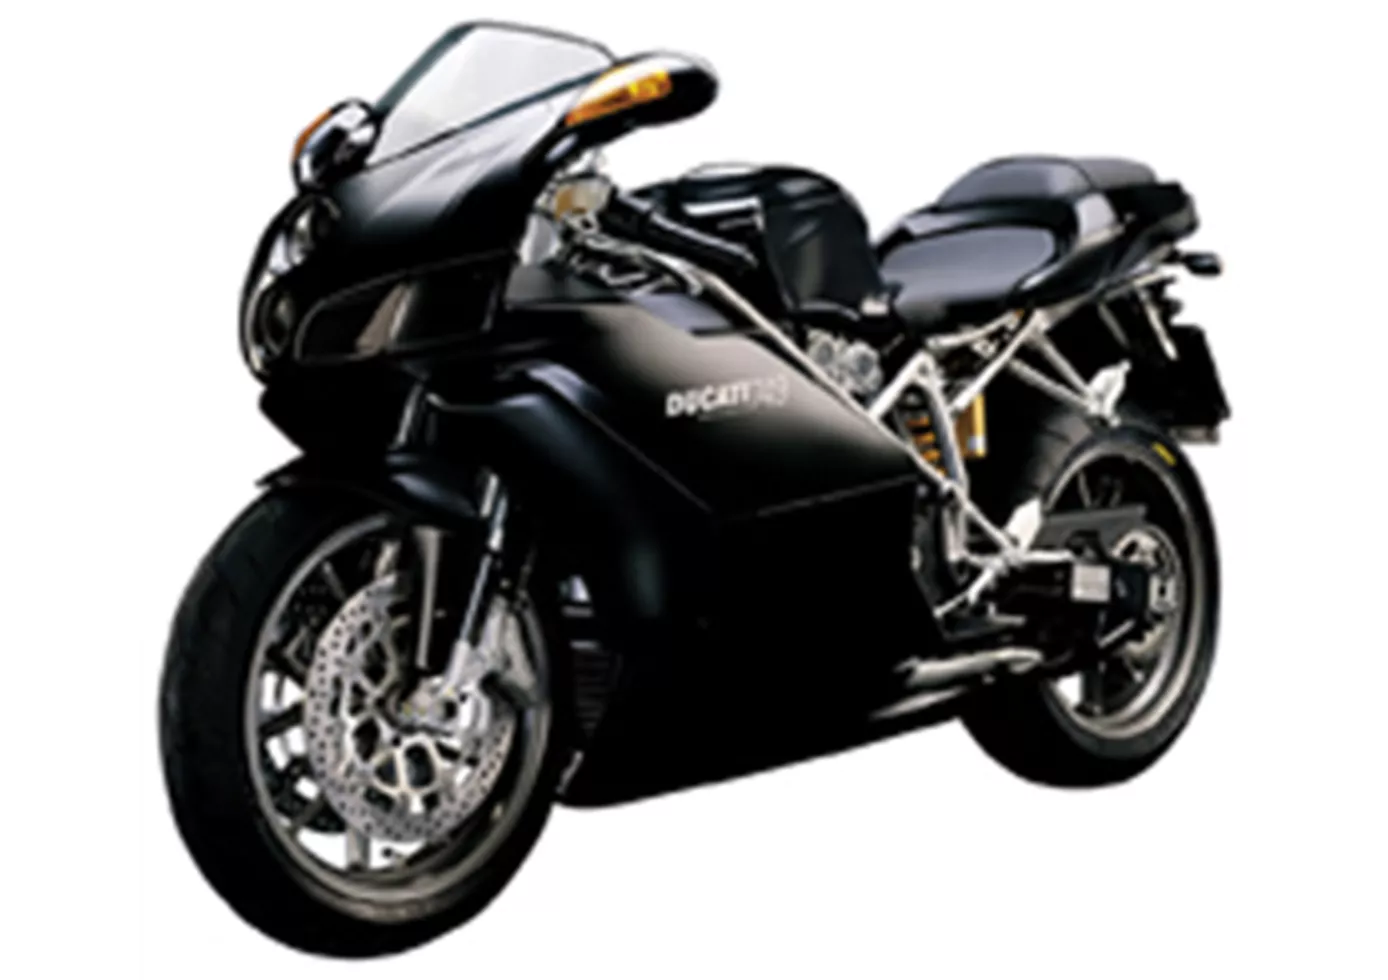 Ducati 749 dark 2006